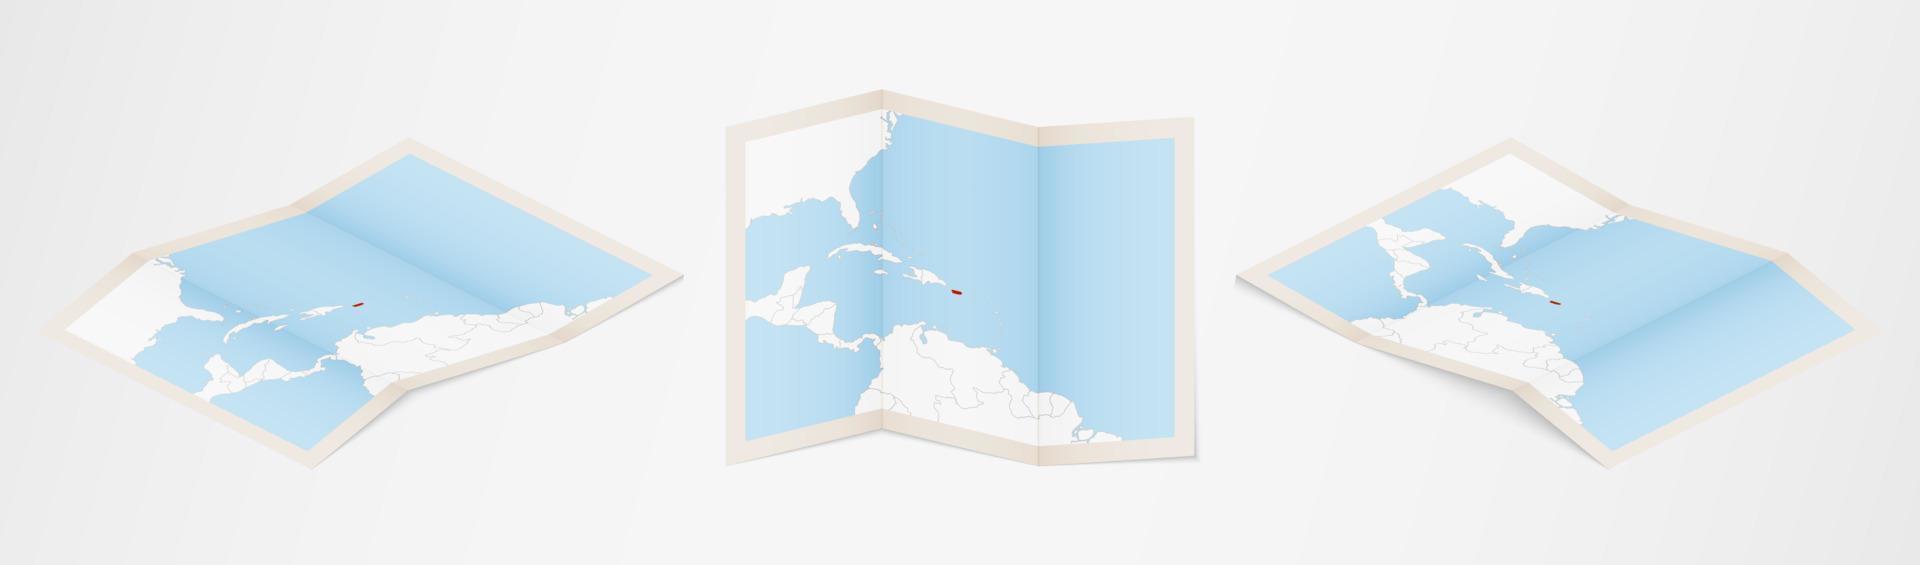 Faltkarte von Puerto Rico in drei verschiedenen Versionen. vektor